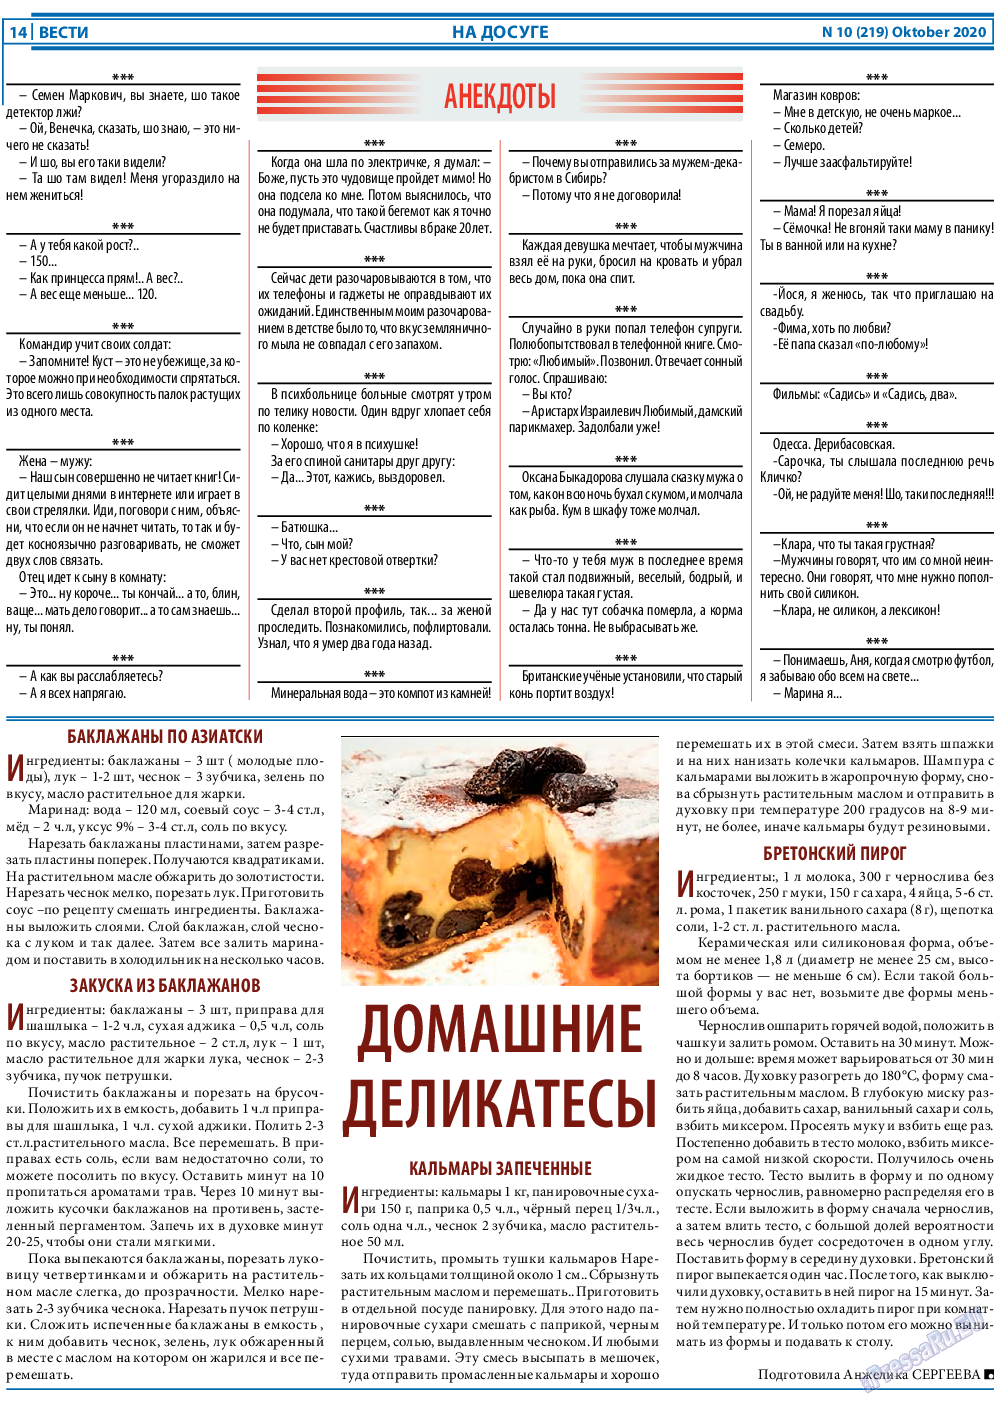 Вести, газета. 2020 №10 стр.14